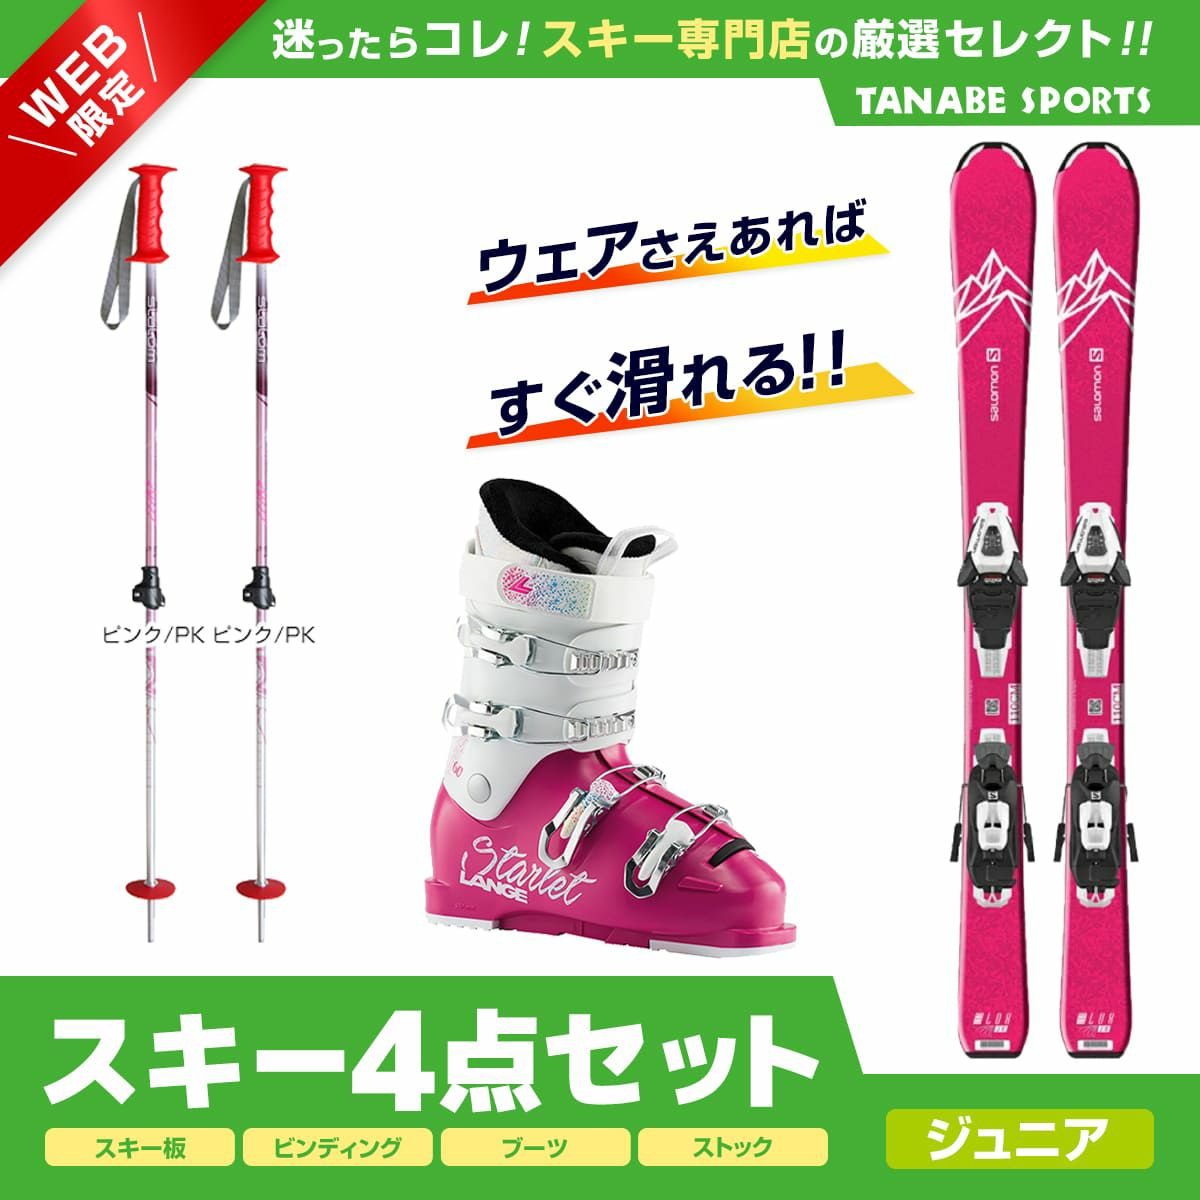 スキーセット 子供用 板 ストックkazama ブーツ nordica-